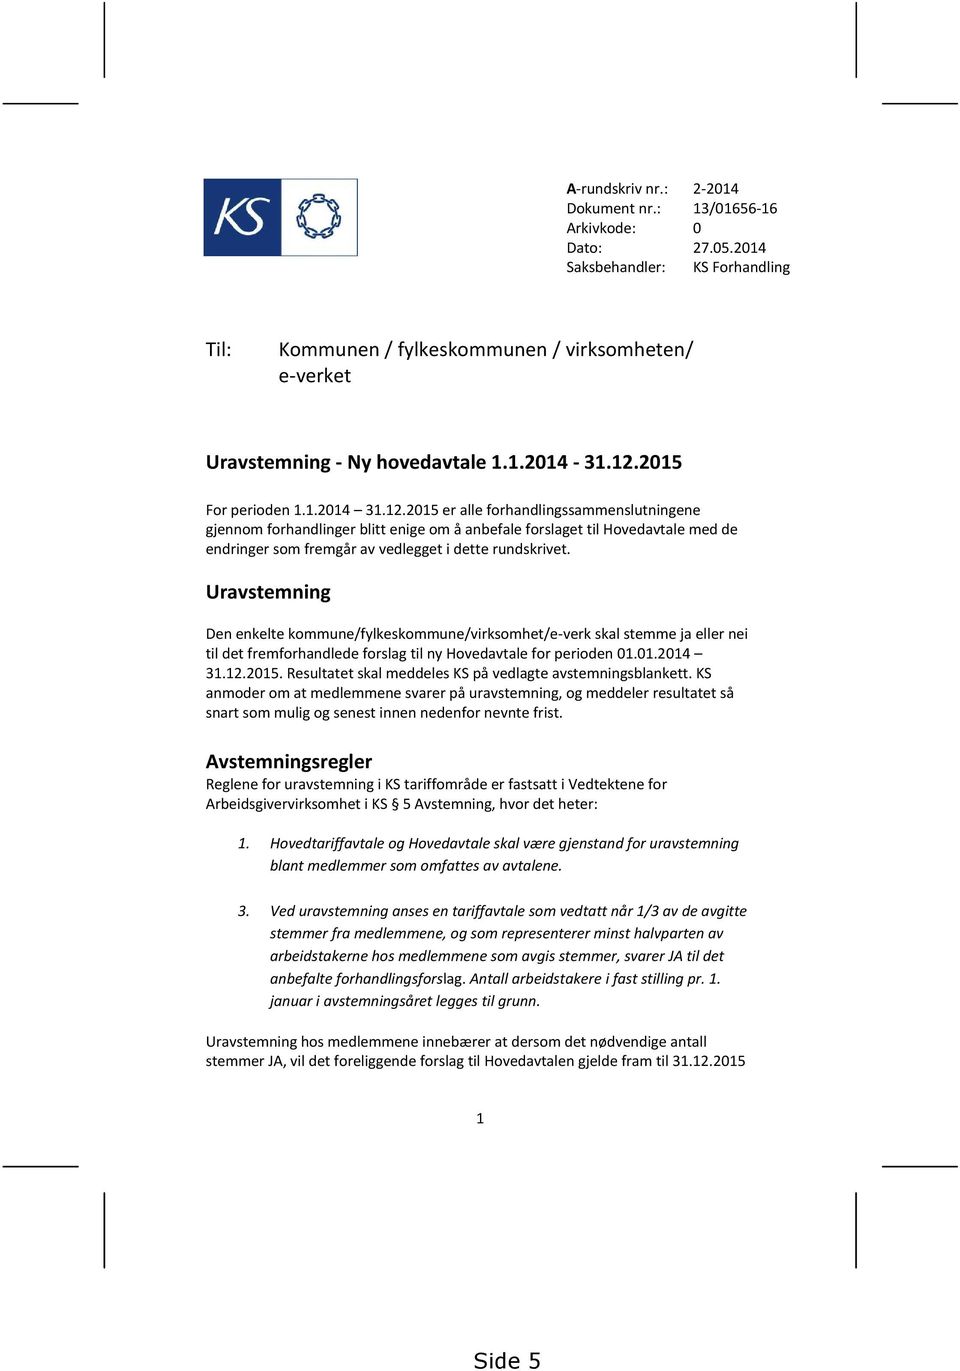 Uravstemning Den enkelte kommune/fylkeskommune/virksomhet/e-verk skal stemme ja eller nei til det fremforhandlede forslag til ny Hovedavtale for perioden 01.01.2014 31.12.2015.